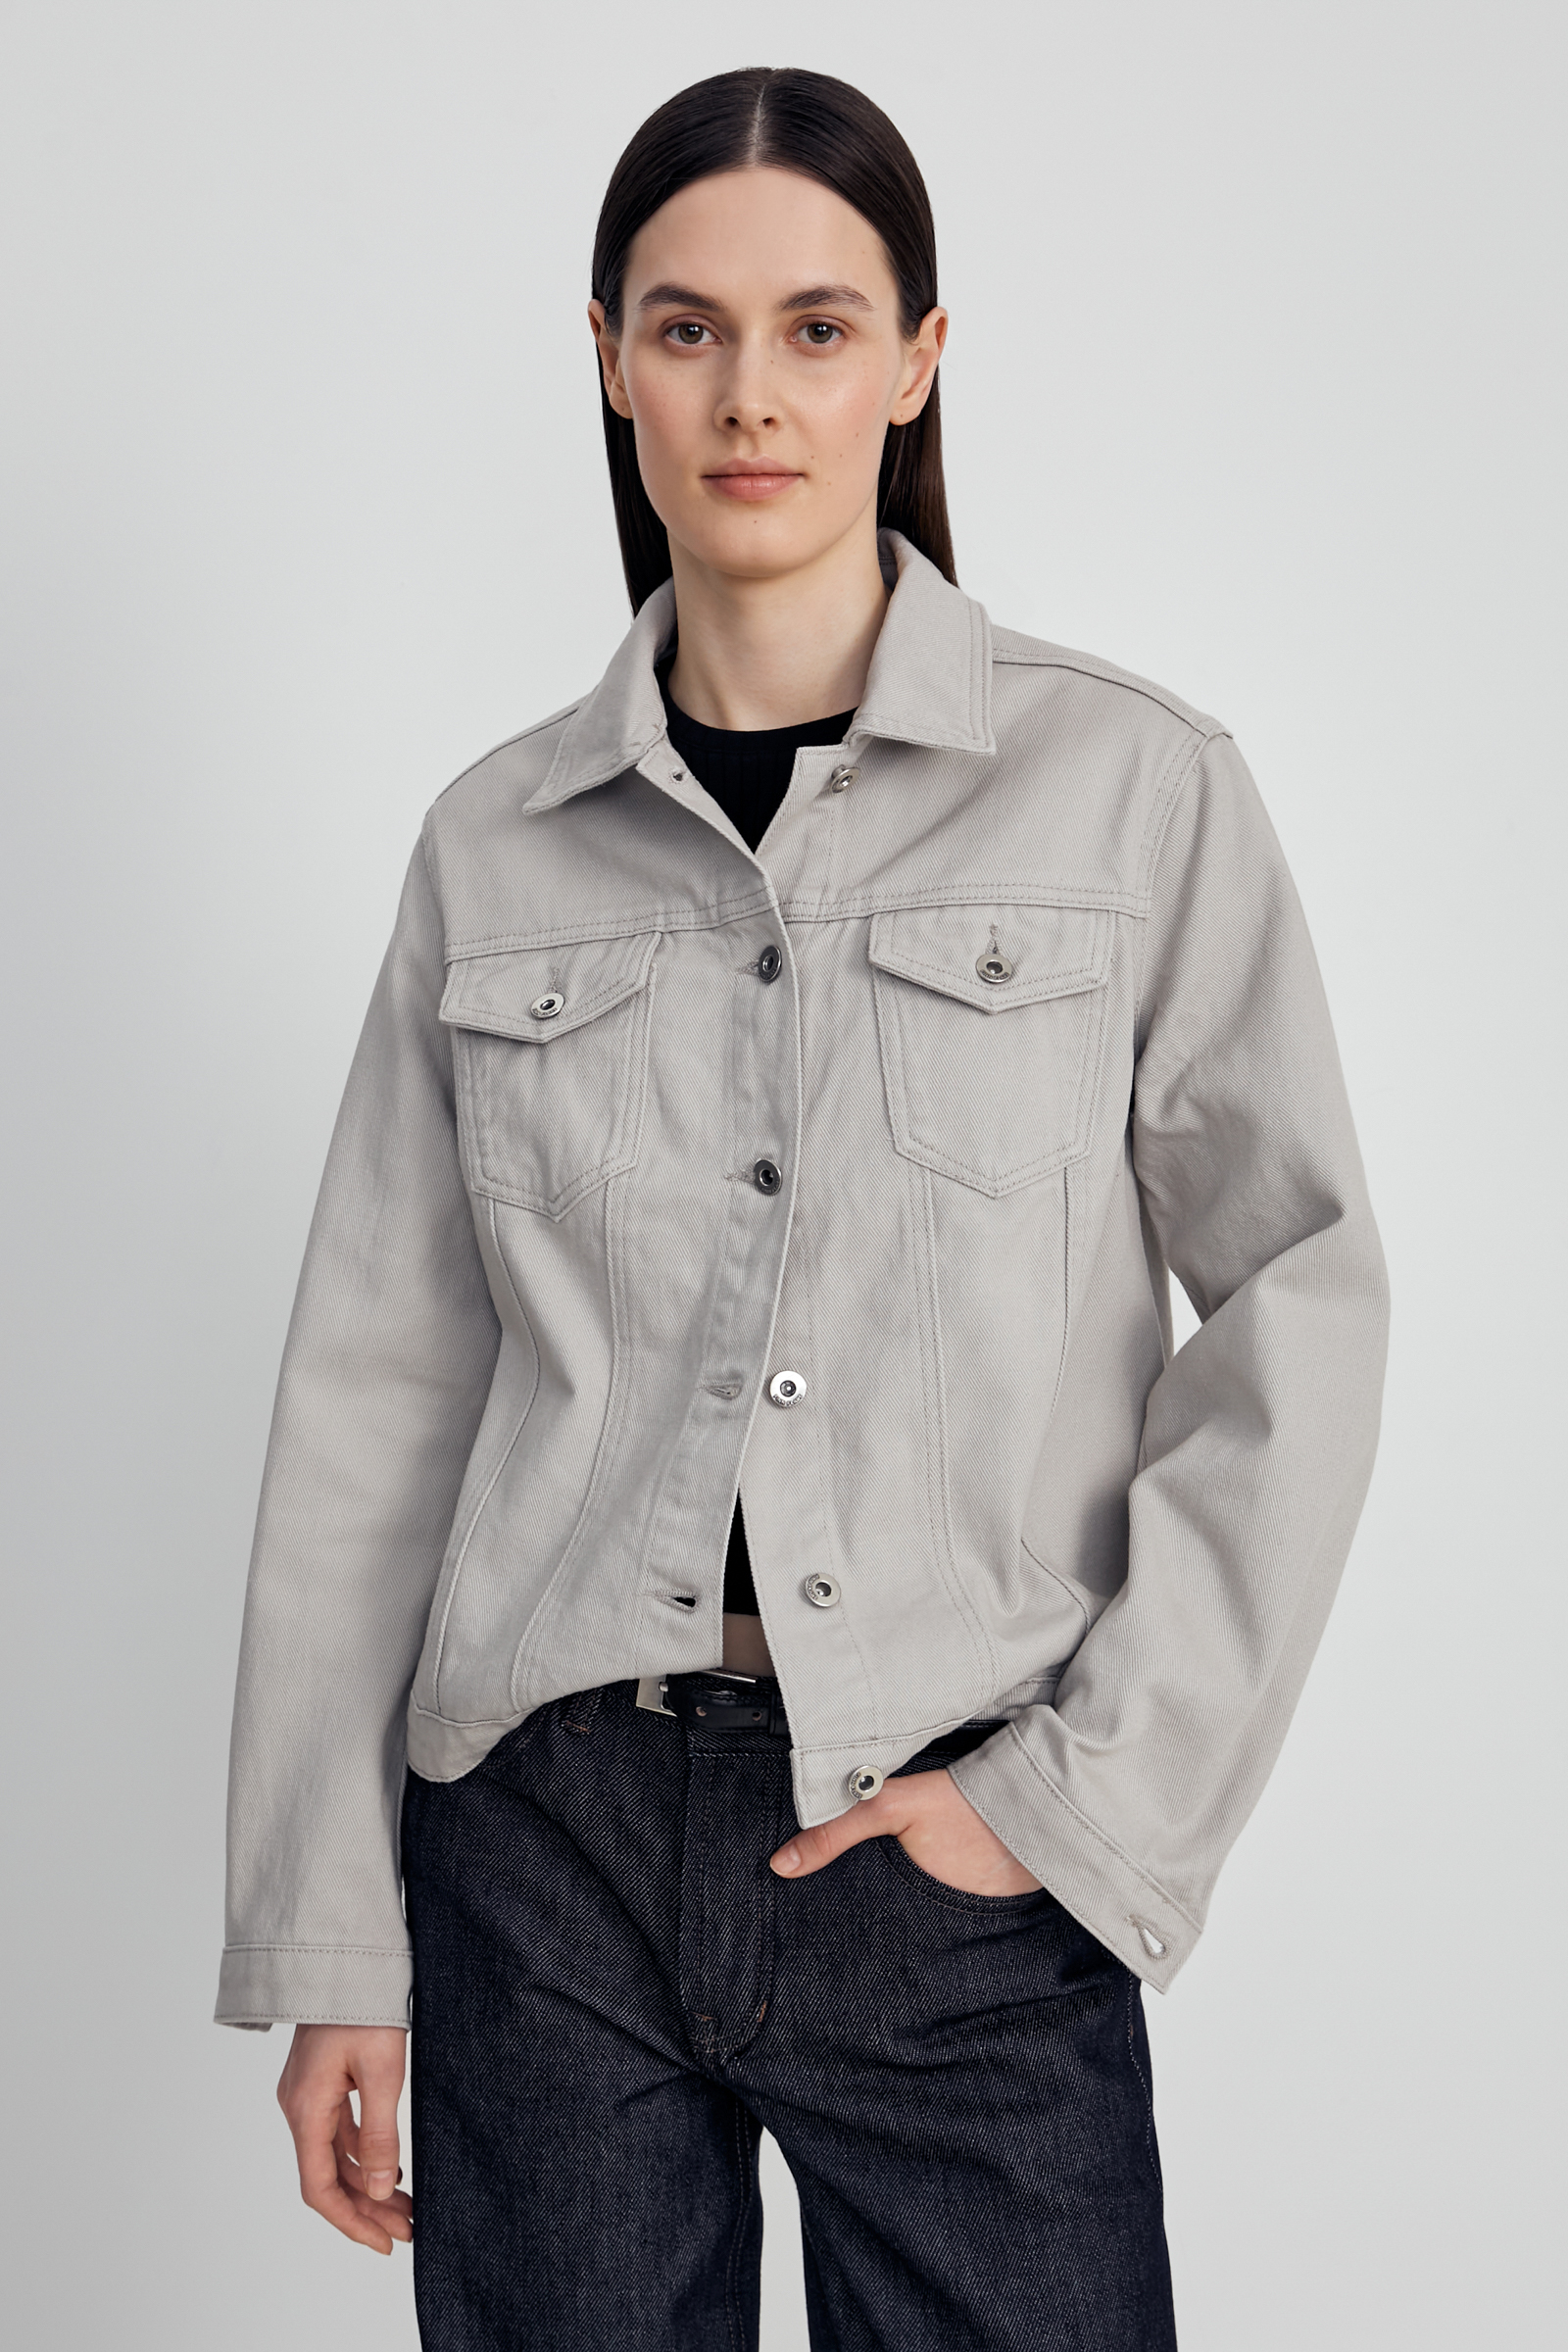 Джинсовая куртка женская Finn Flare FSC15011 серая XL